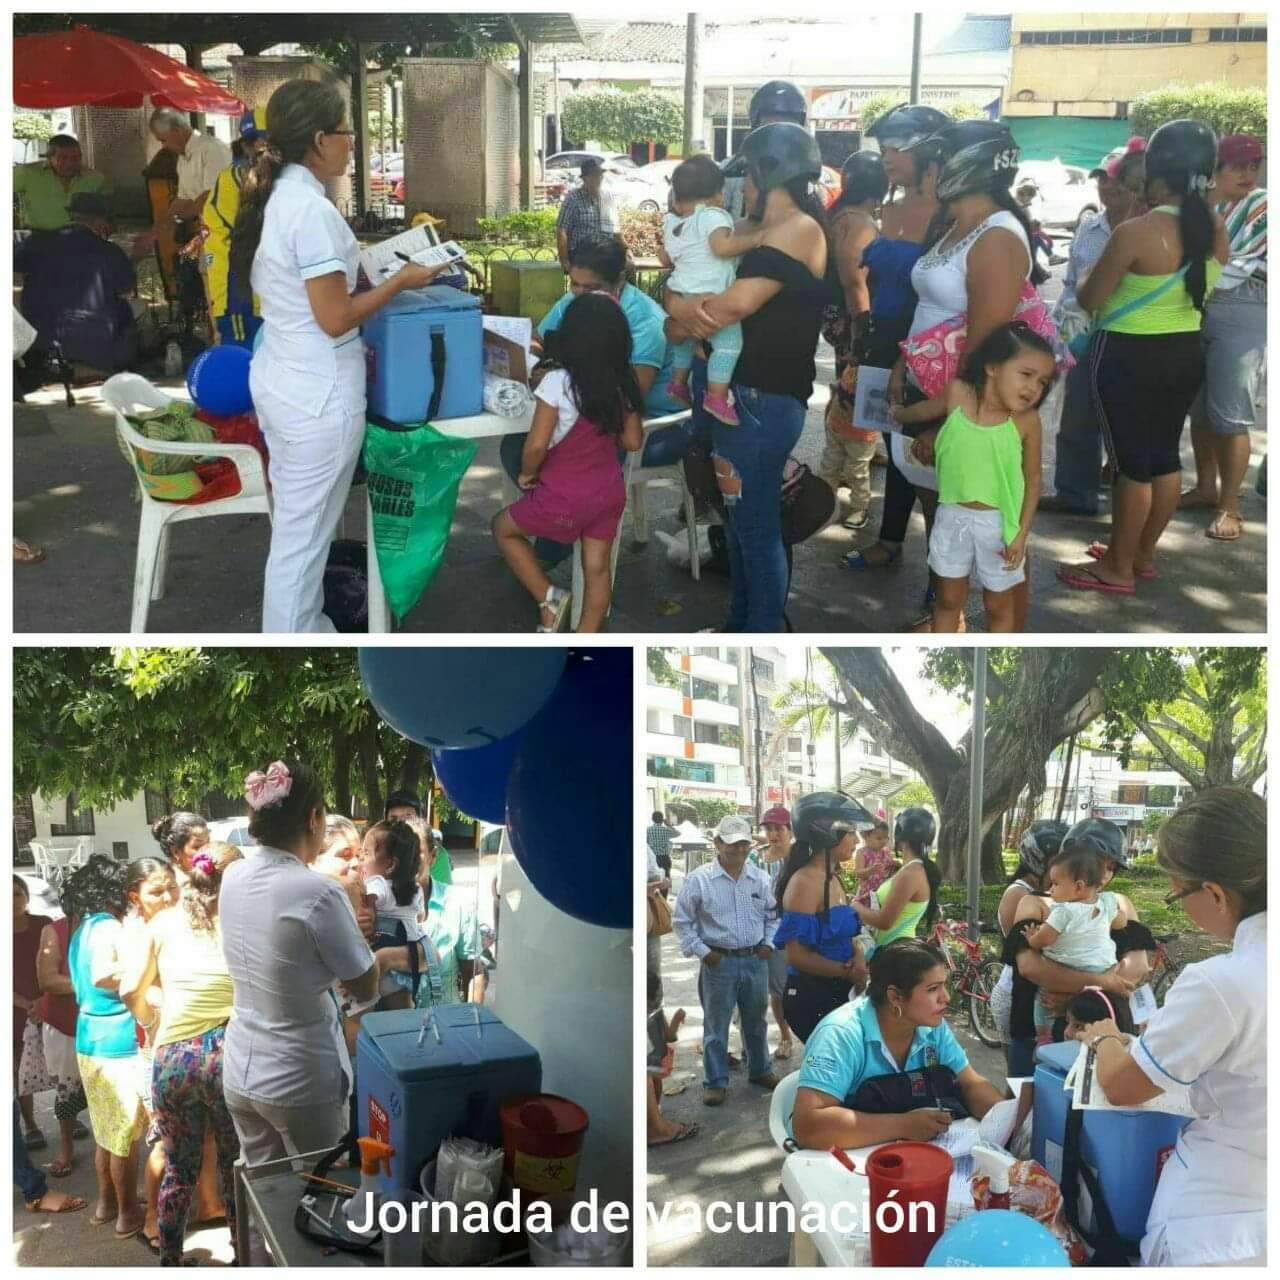 Gran jornada de vacunación este sábado en El Espinal